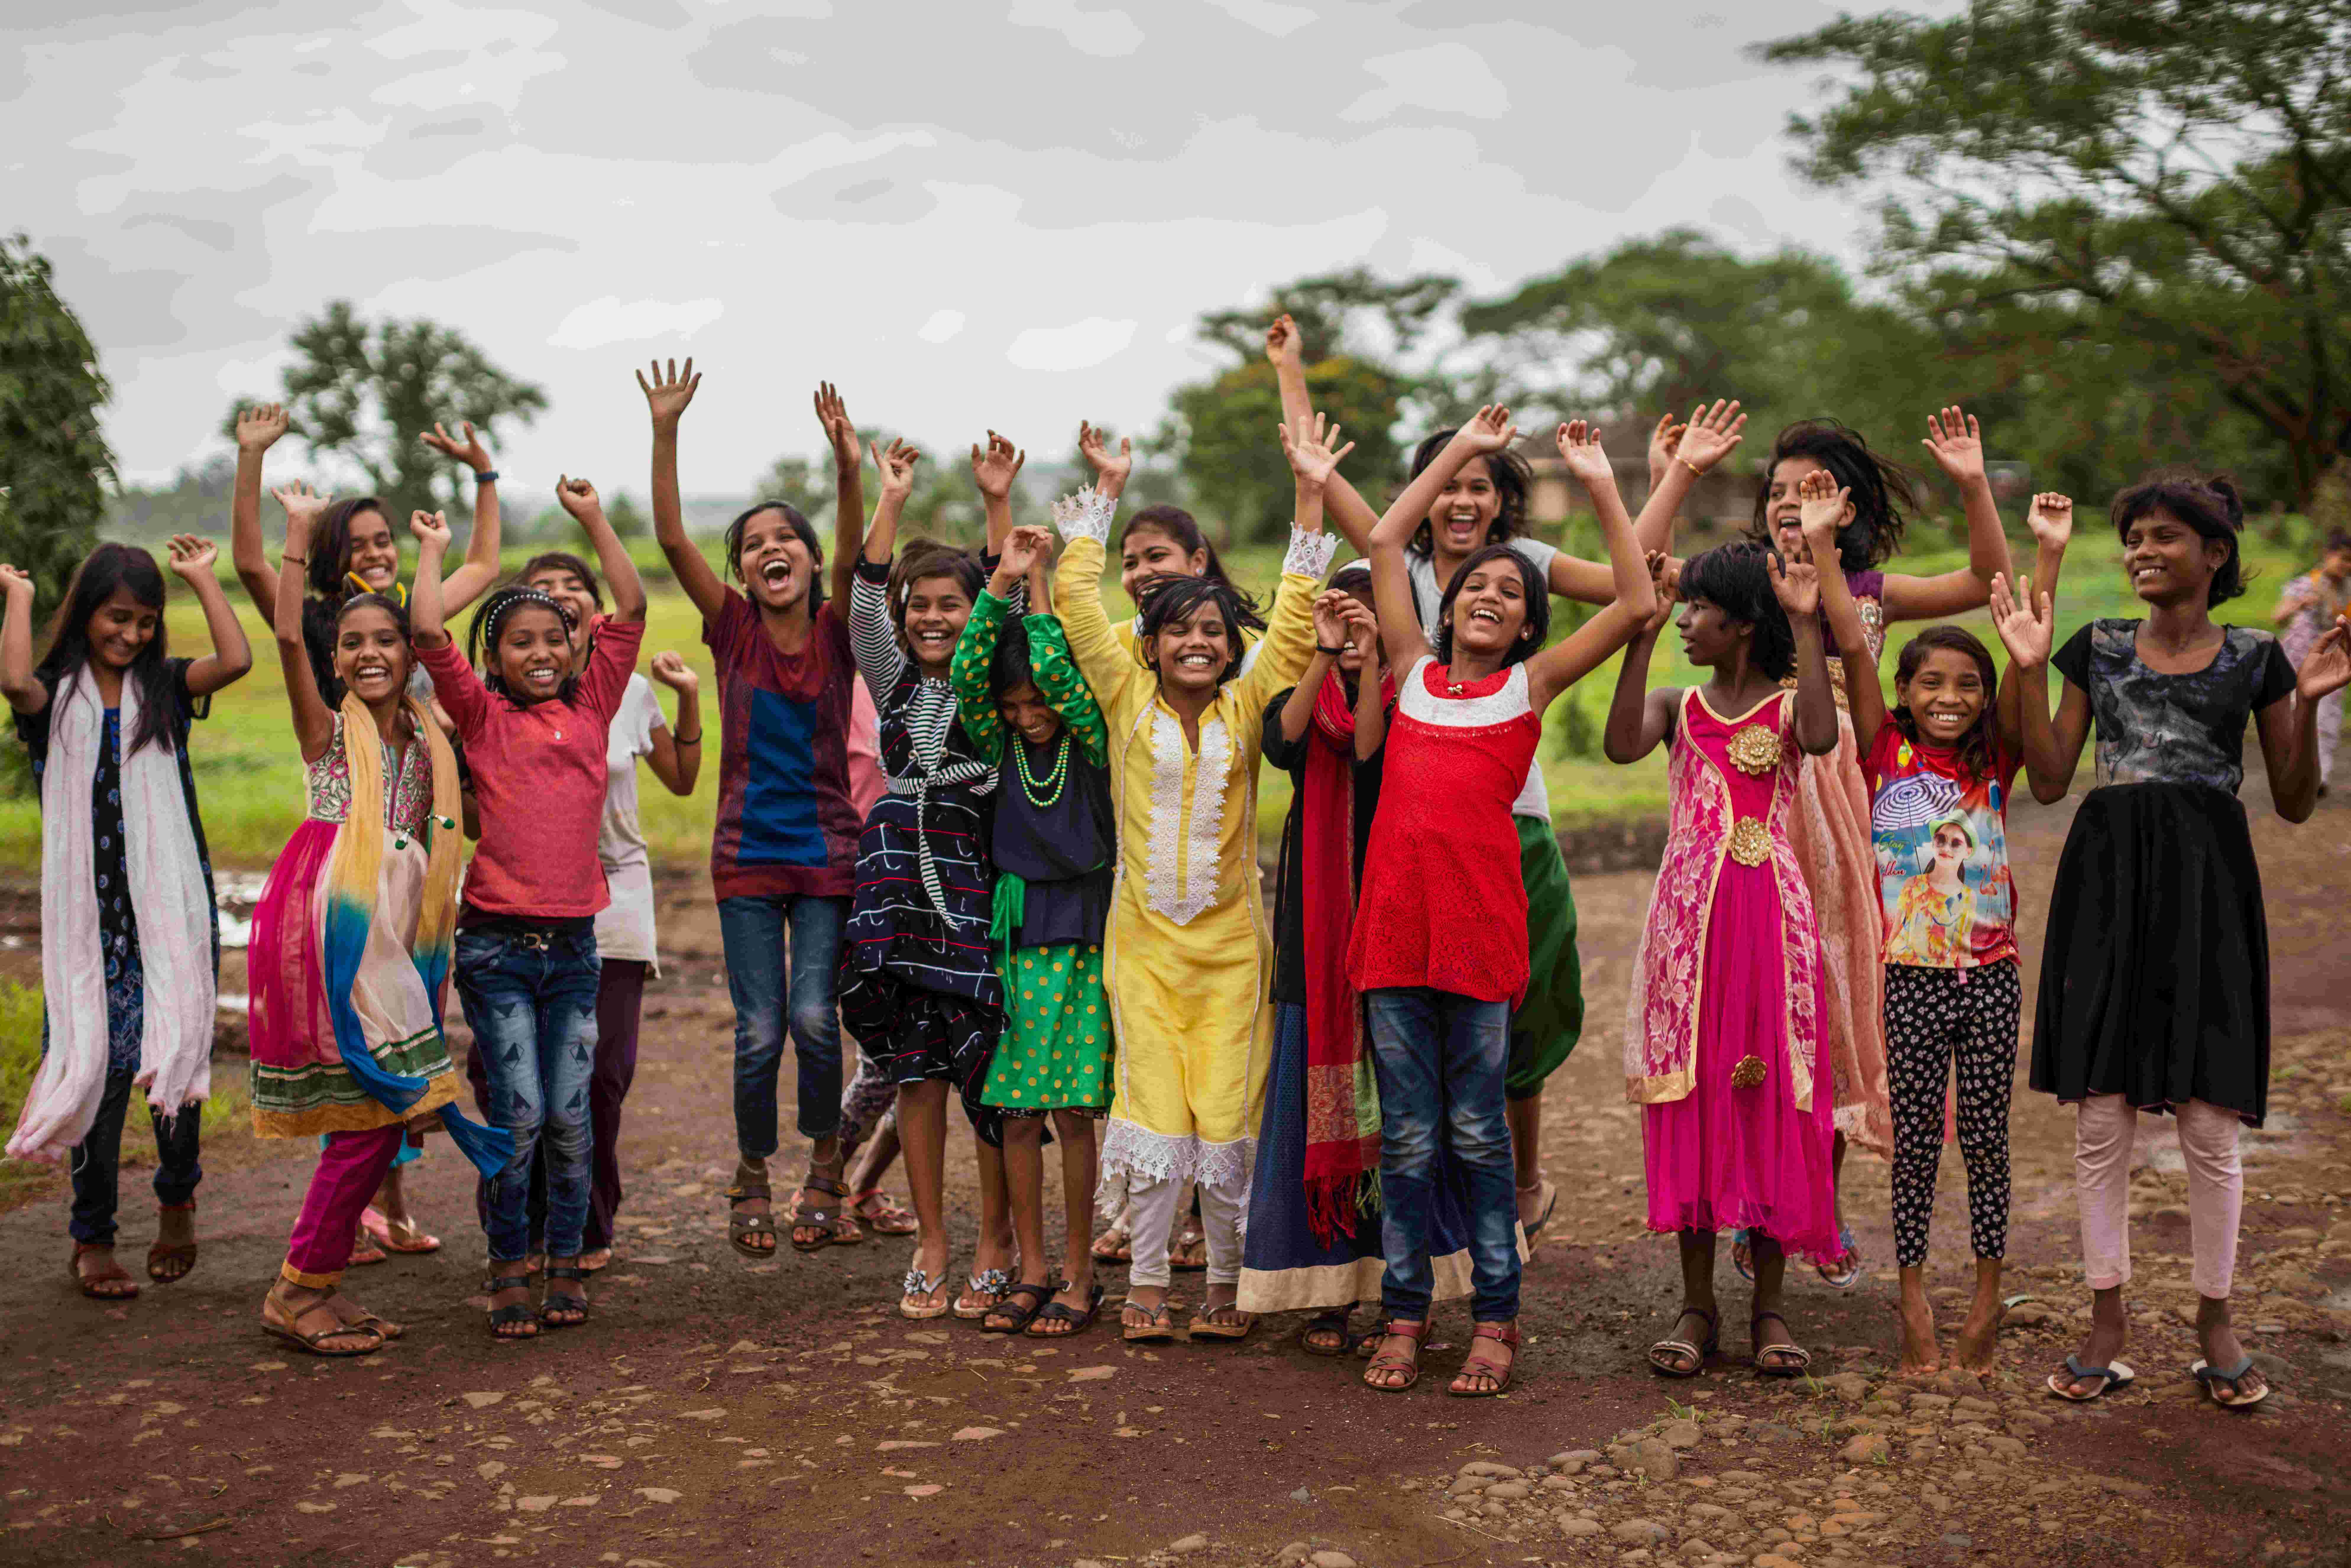 Eine Gruppe Mädchen wirft die Arme in die Luft und strahlt vor einer Wiese mit Bäumen im Hintergrund  (Bildquelle: Jakob Studnar)